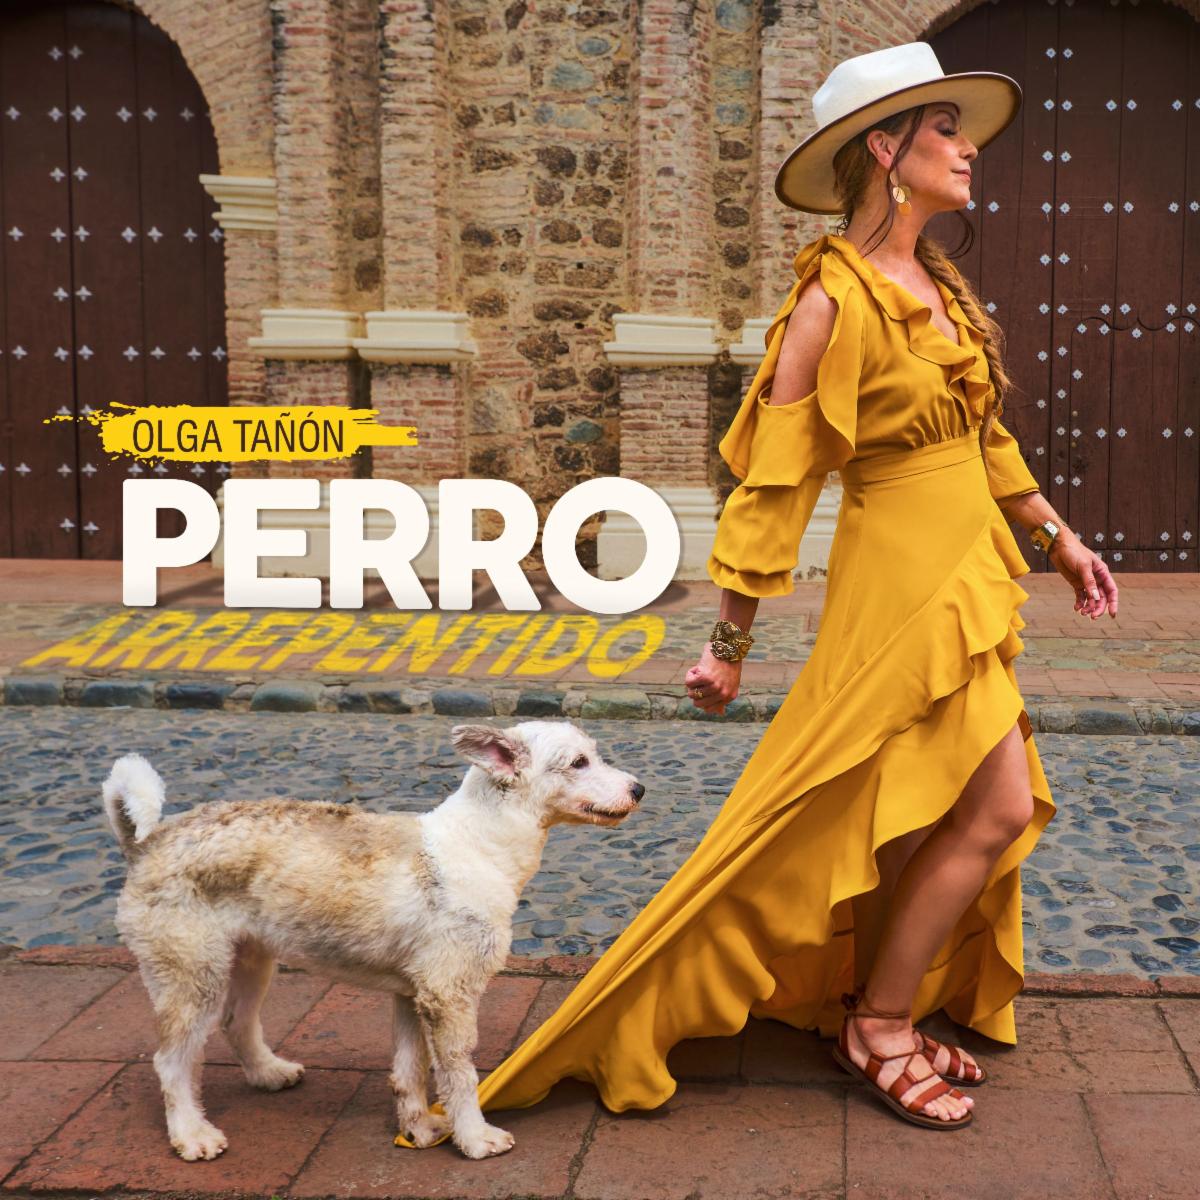 OLGA TAÑON lanza nuevo sencillo “Perro Arrepentido”